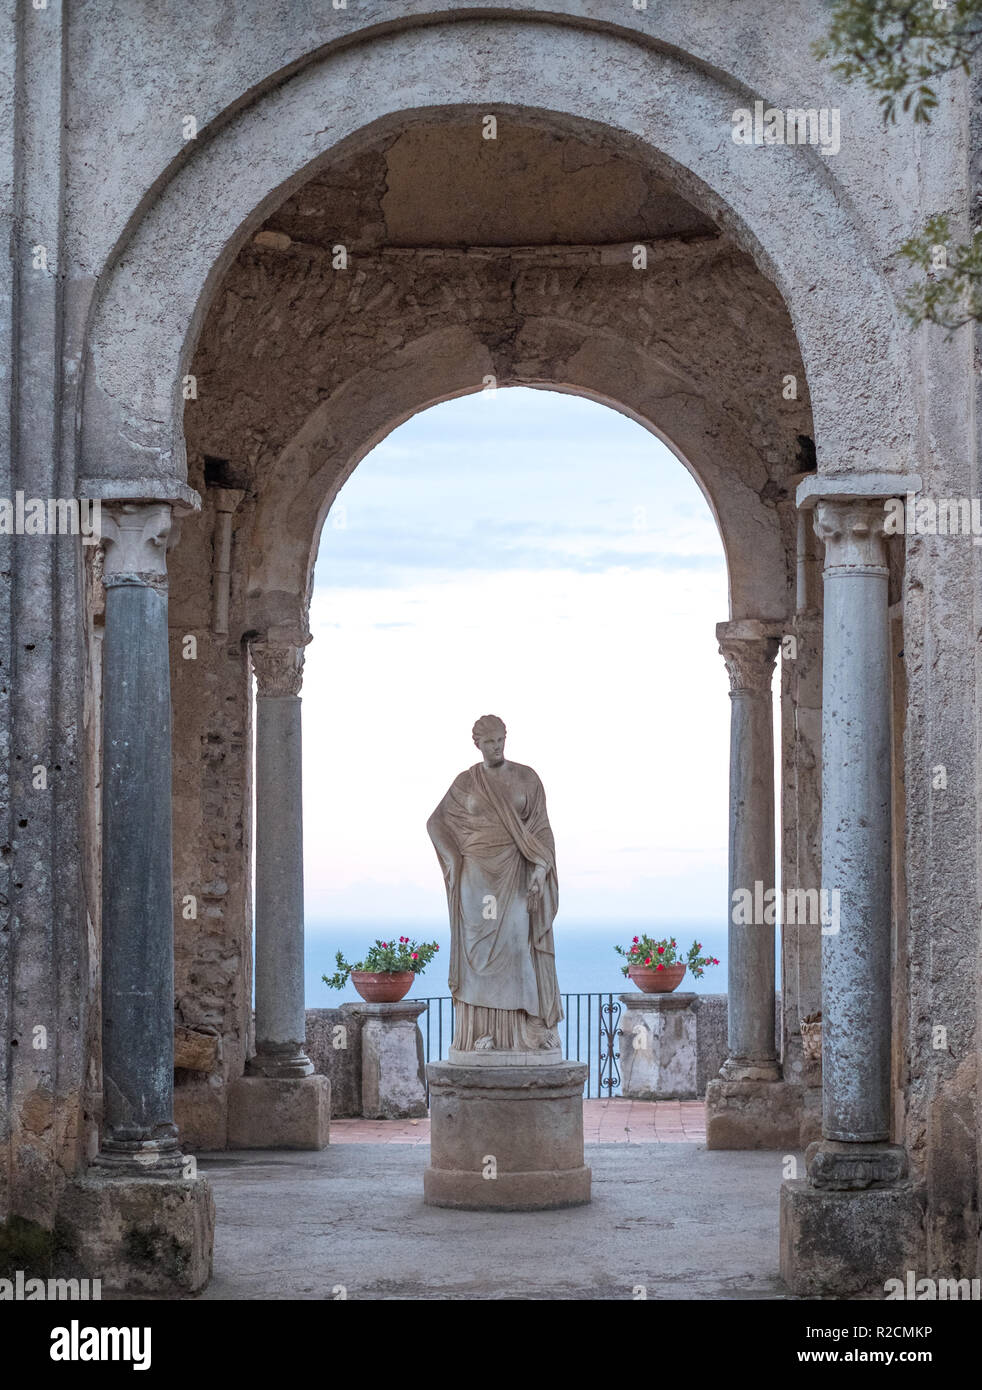 Statue de Cérès dans les jardins de la Villa Cimbrone à l'entrée de la terrasse de l'infini, Ravello, Italie. Distance de la mer Méditerranée. Banque D'Images